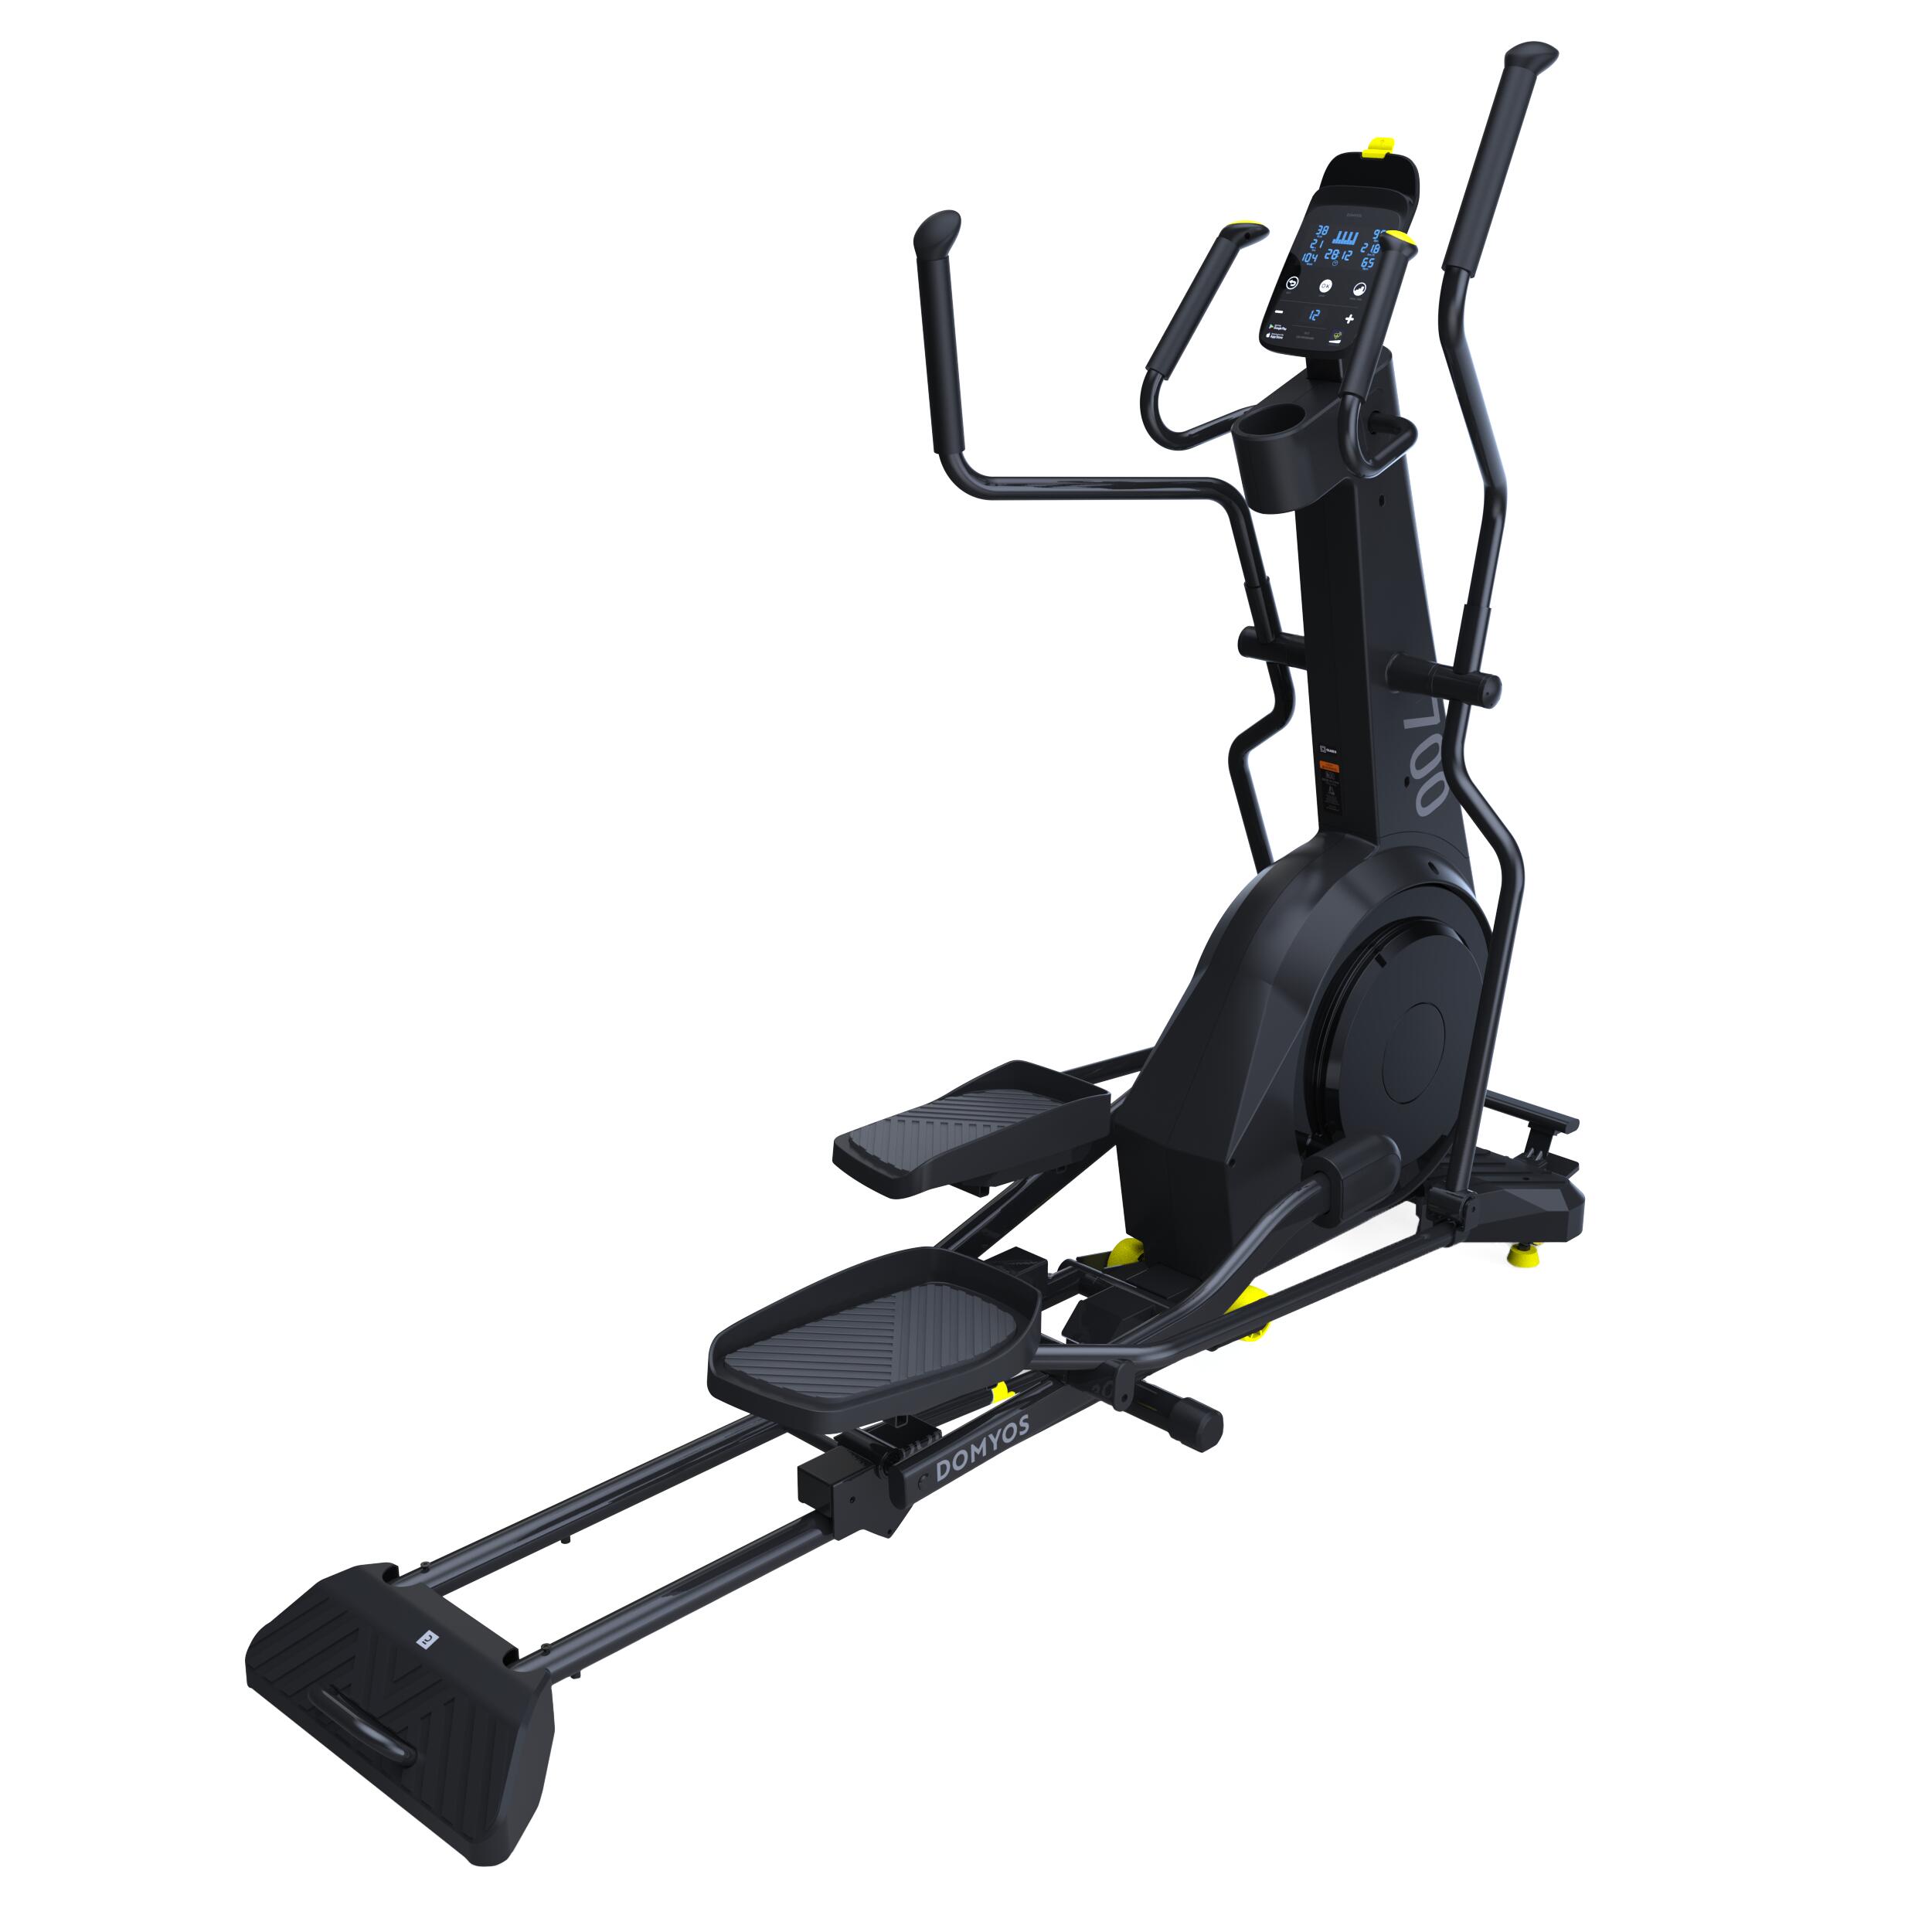 Bicicletă eliptică EL 700 pliabilă, auto-alimentată și conectată decathlon.ro  Aparate fitness cardio